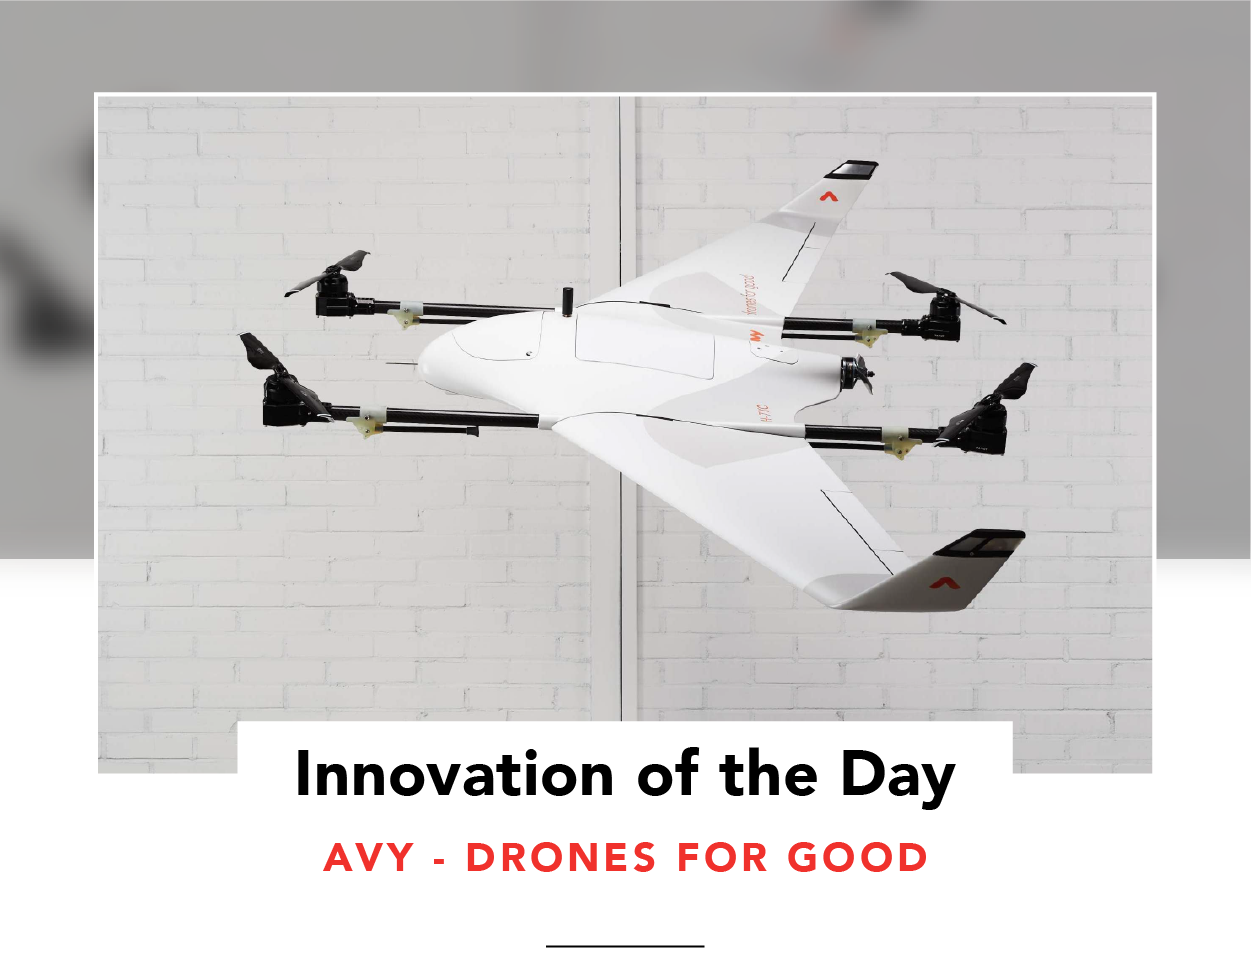 Avy's Aera drone